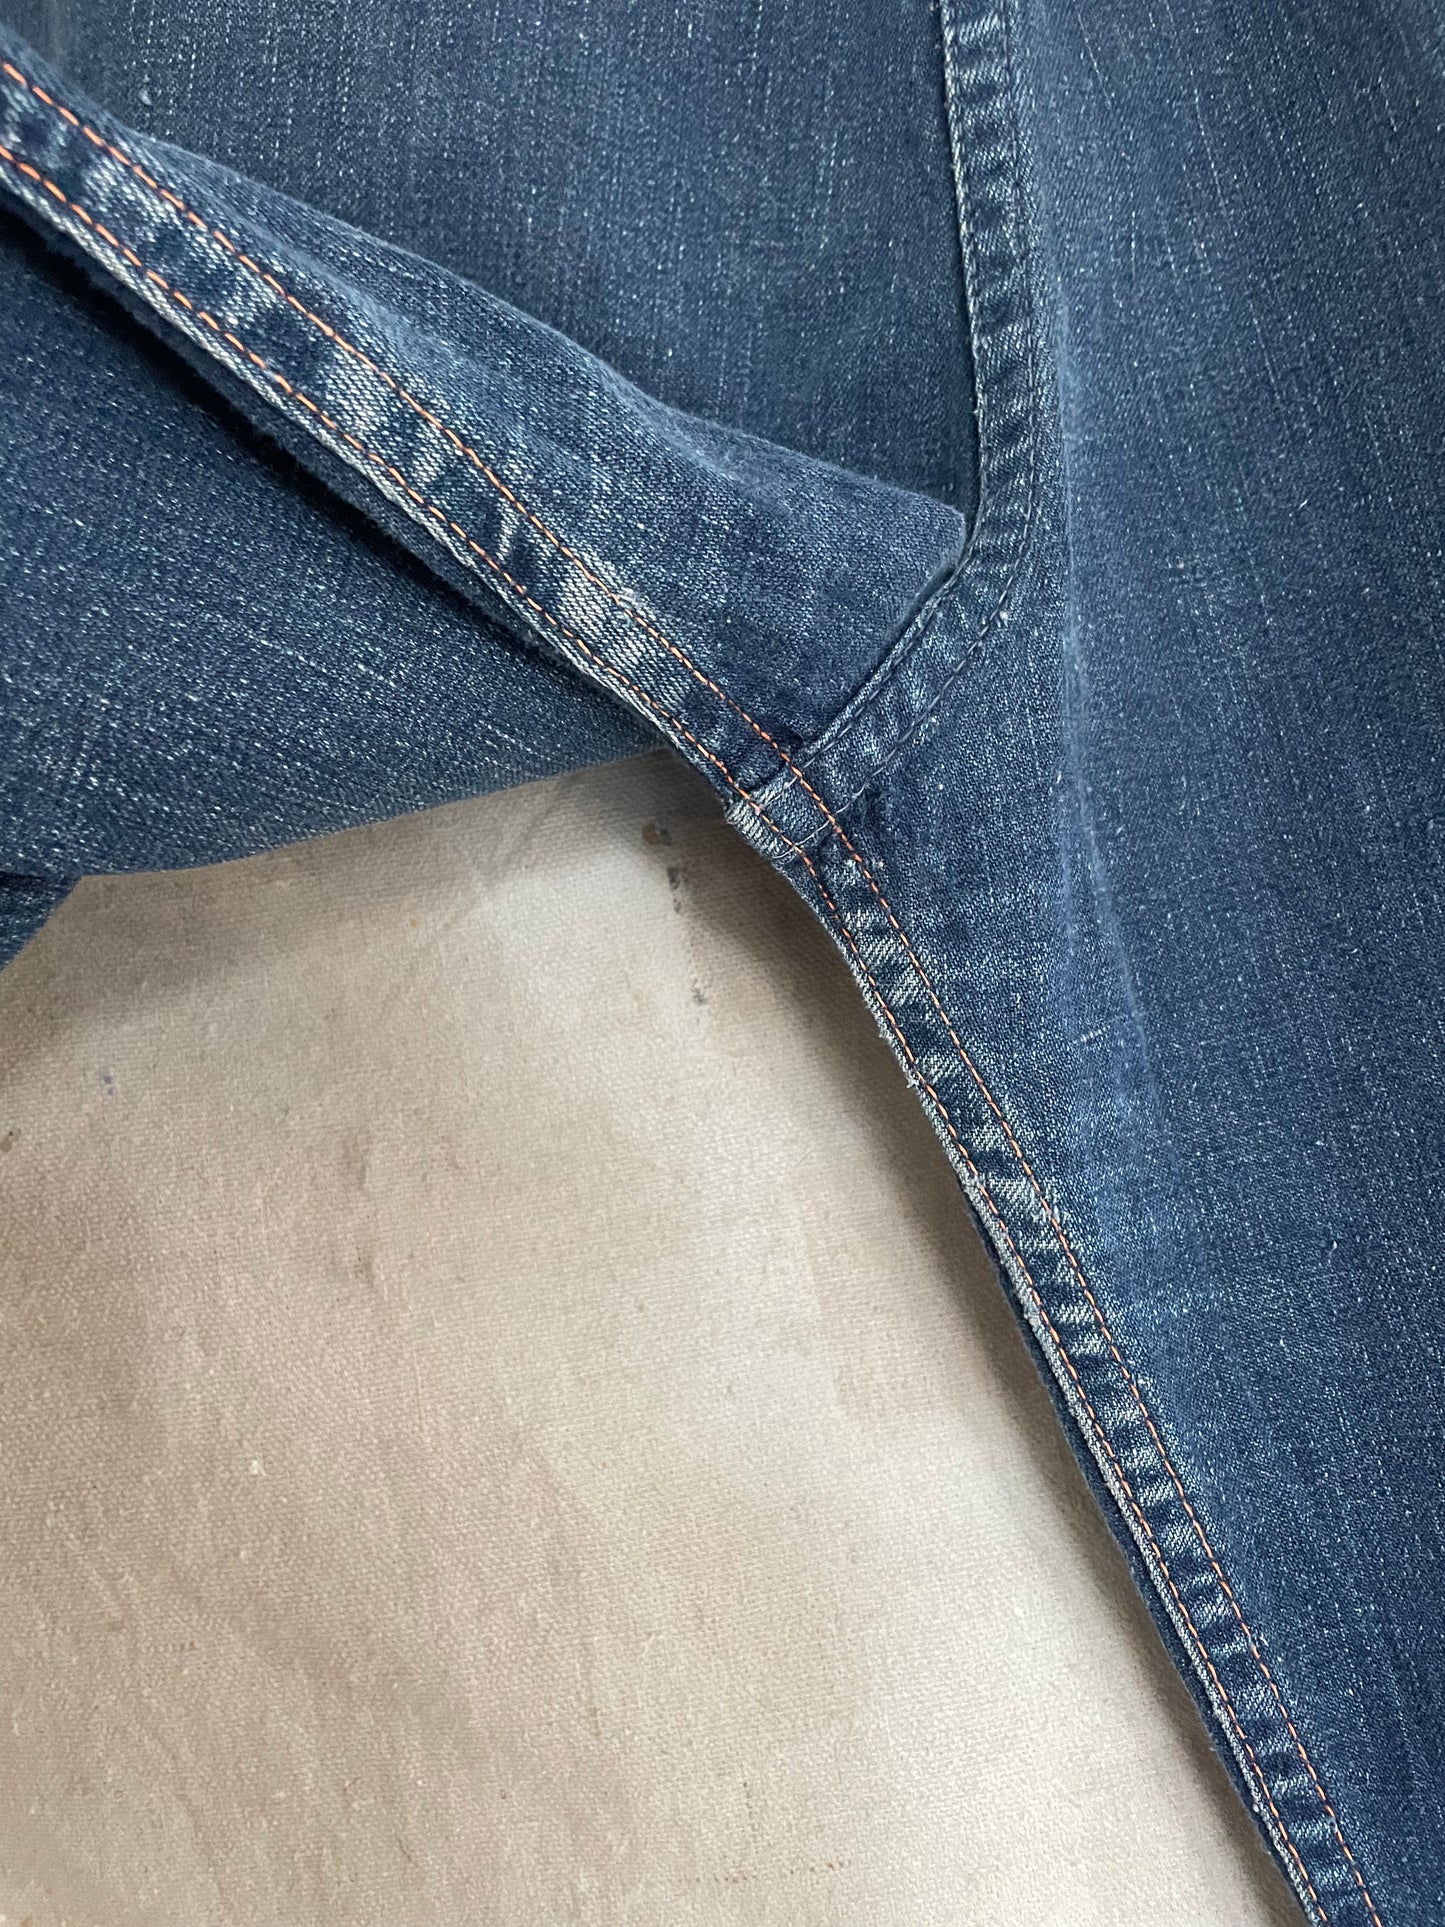 50s Side Zip Jeans